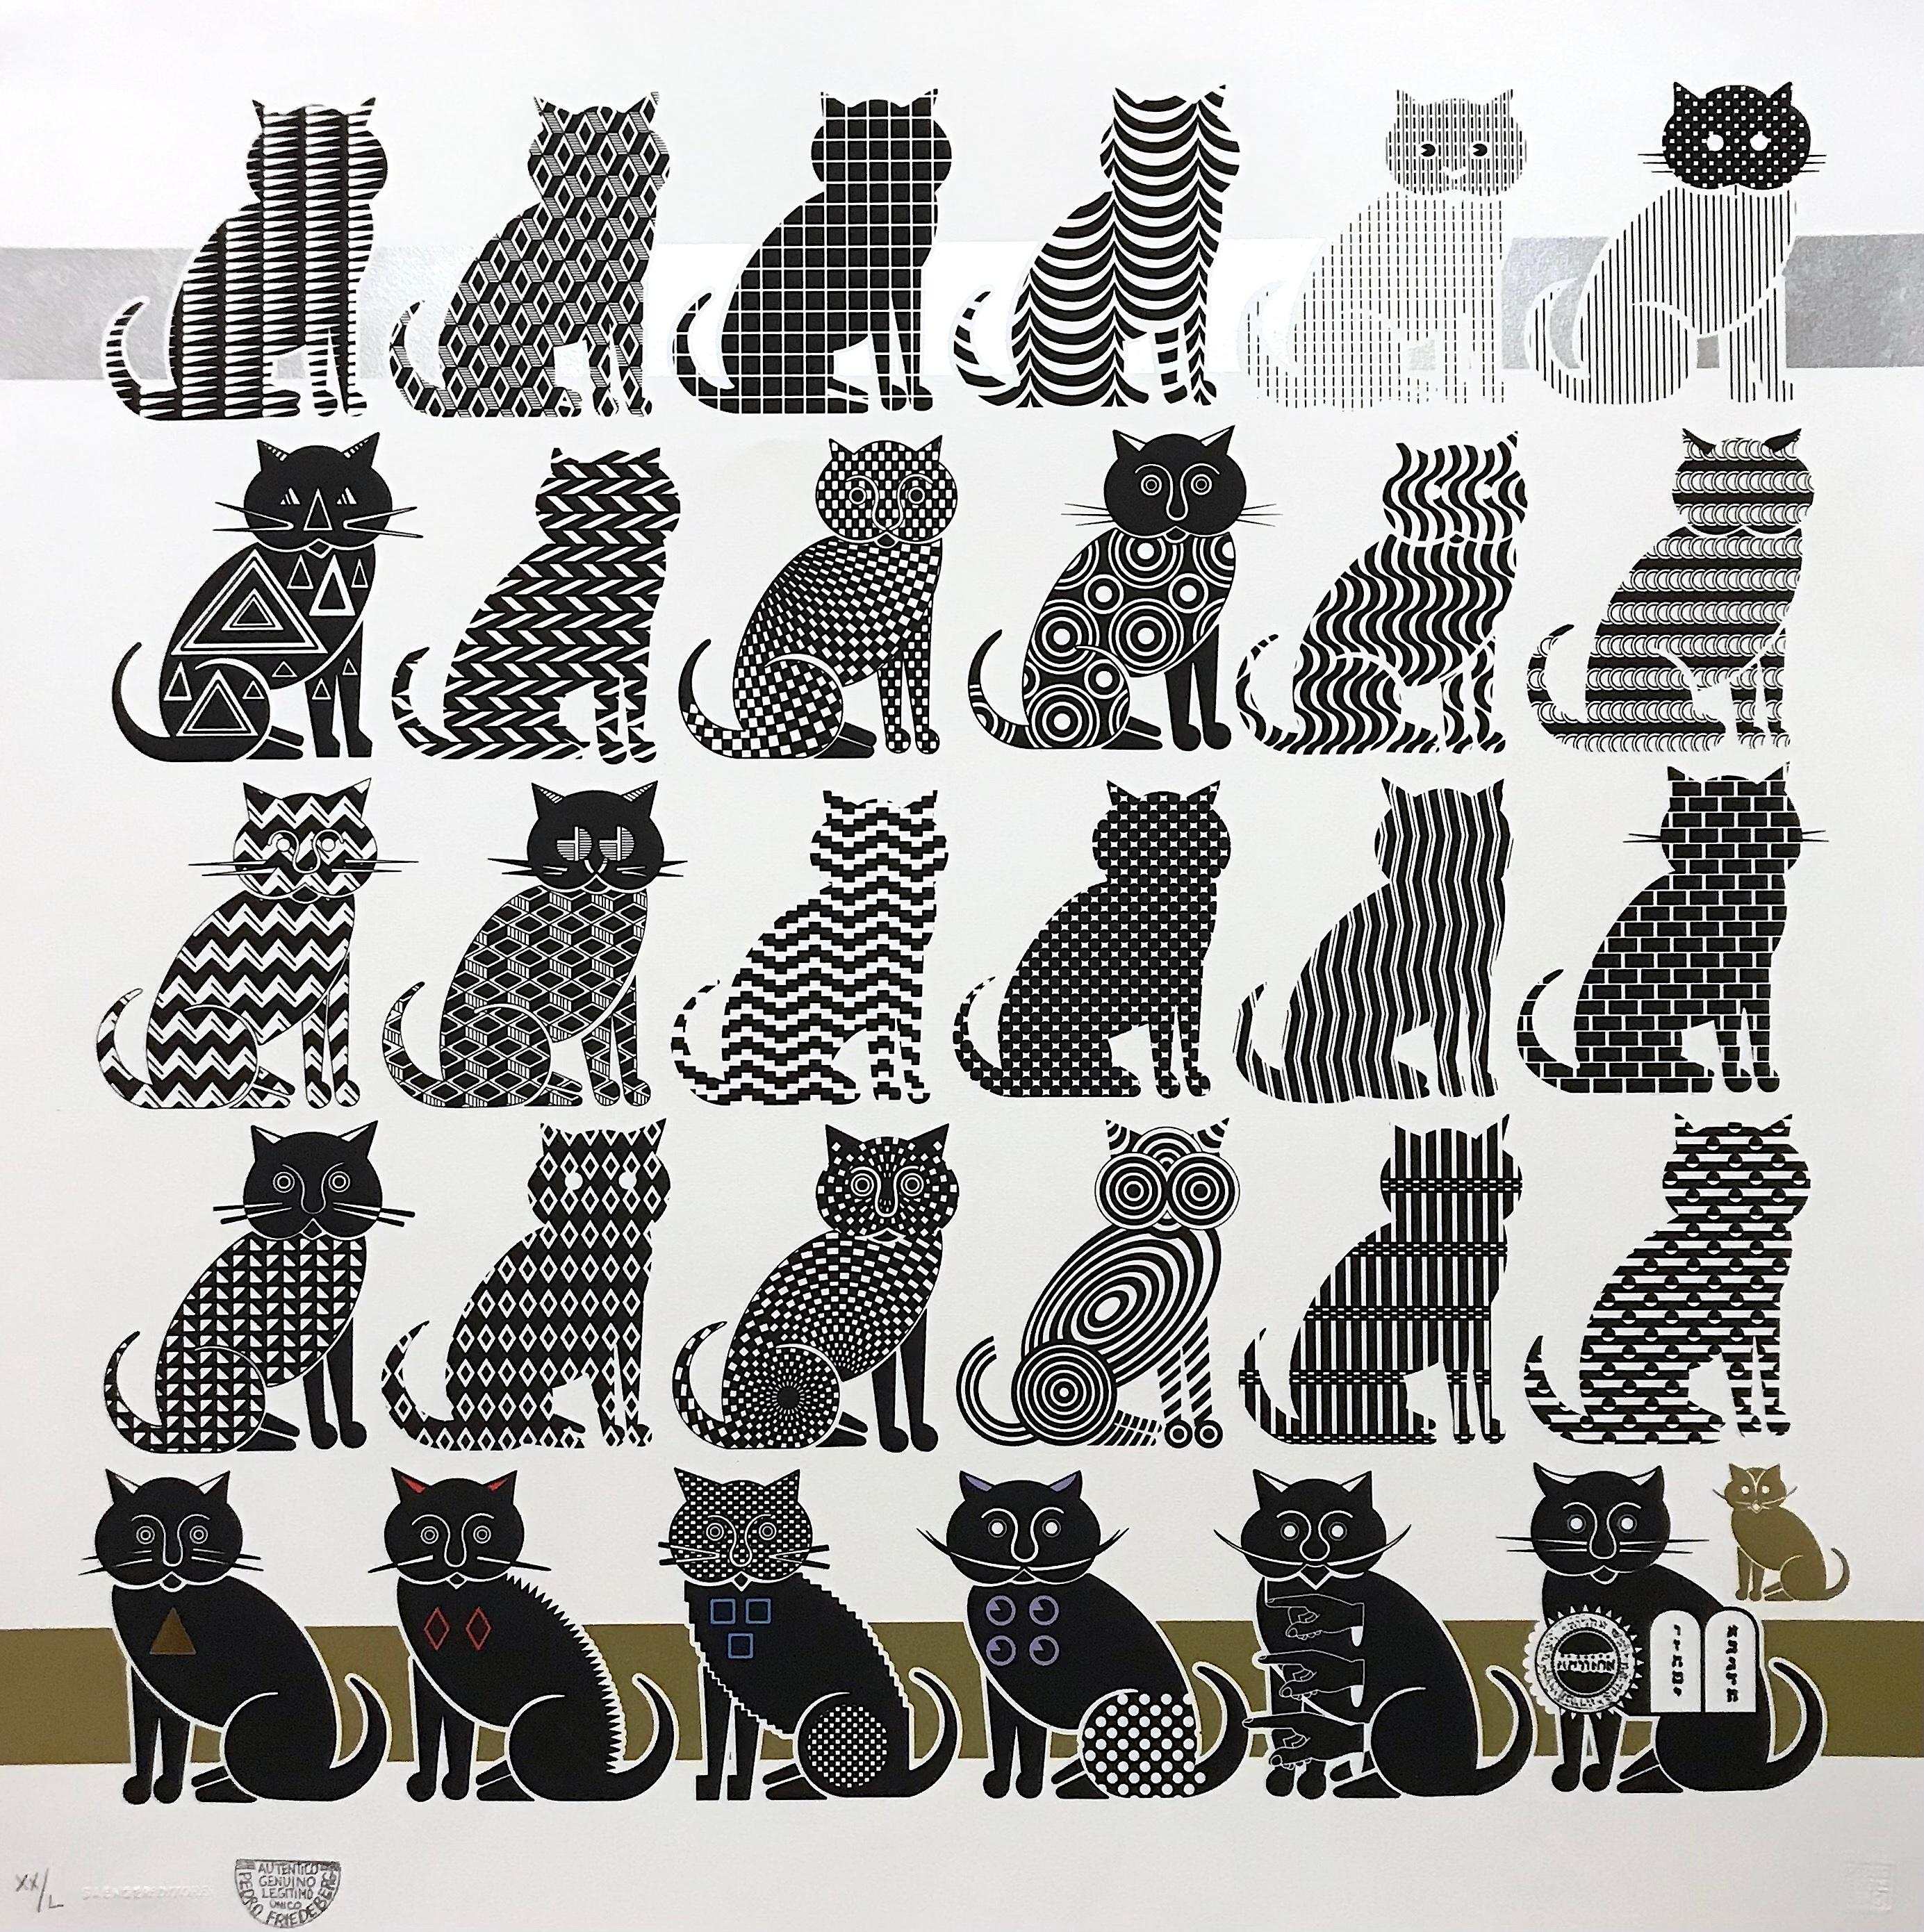 "Cats" - Impression surréaliste 2d, motifs en noir et blanc, animaux